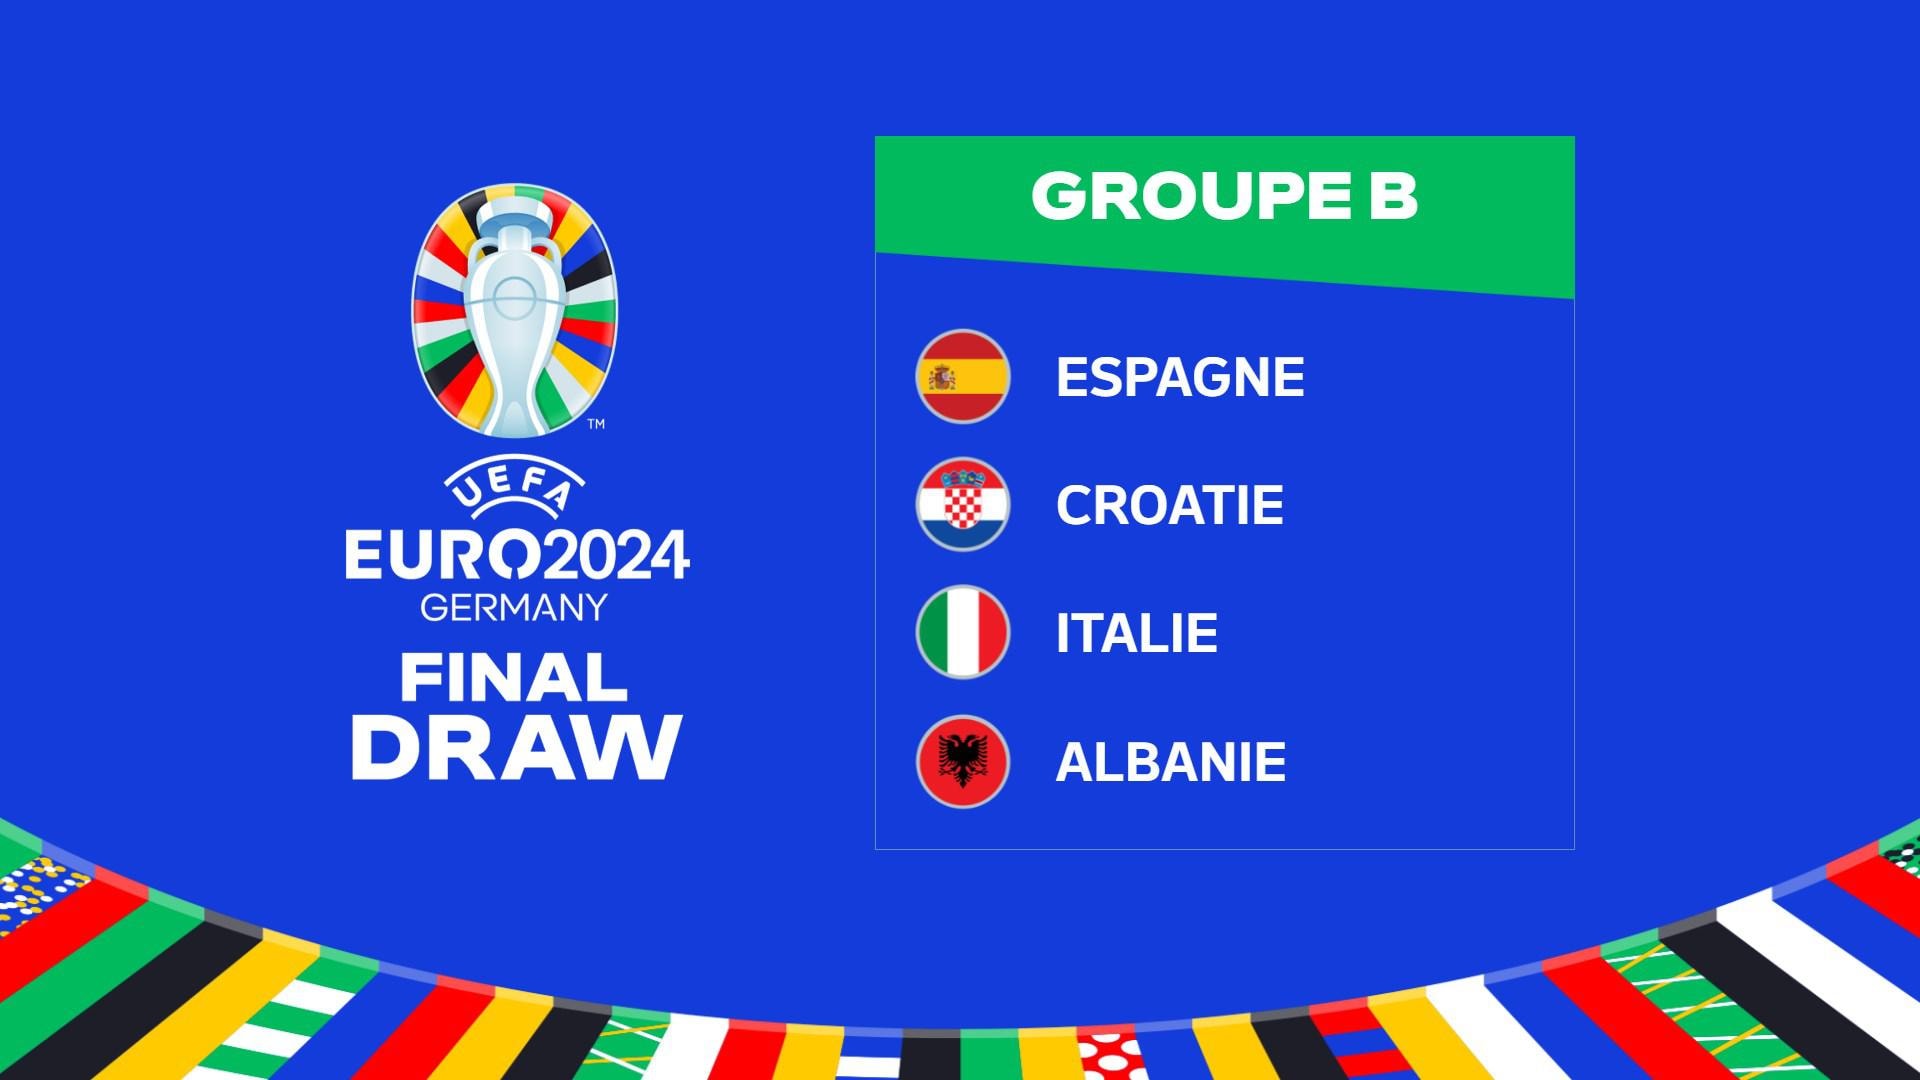 UEFA EURO 2024, Gruppo B, Spagna, Croazia, Italia e Albania |  UEFA EURO 2024